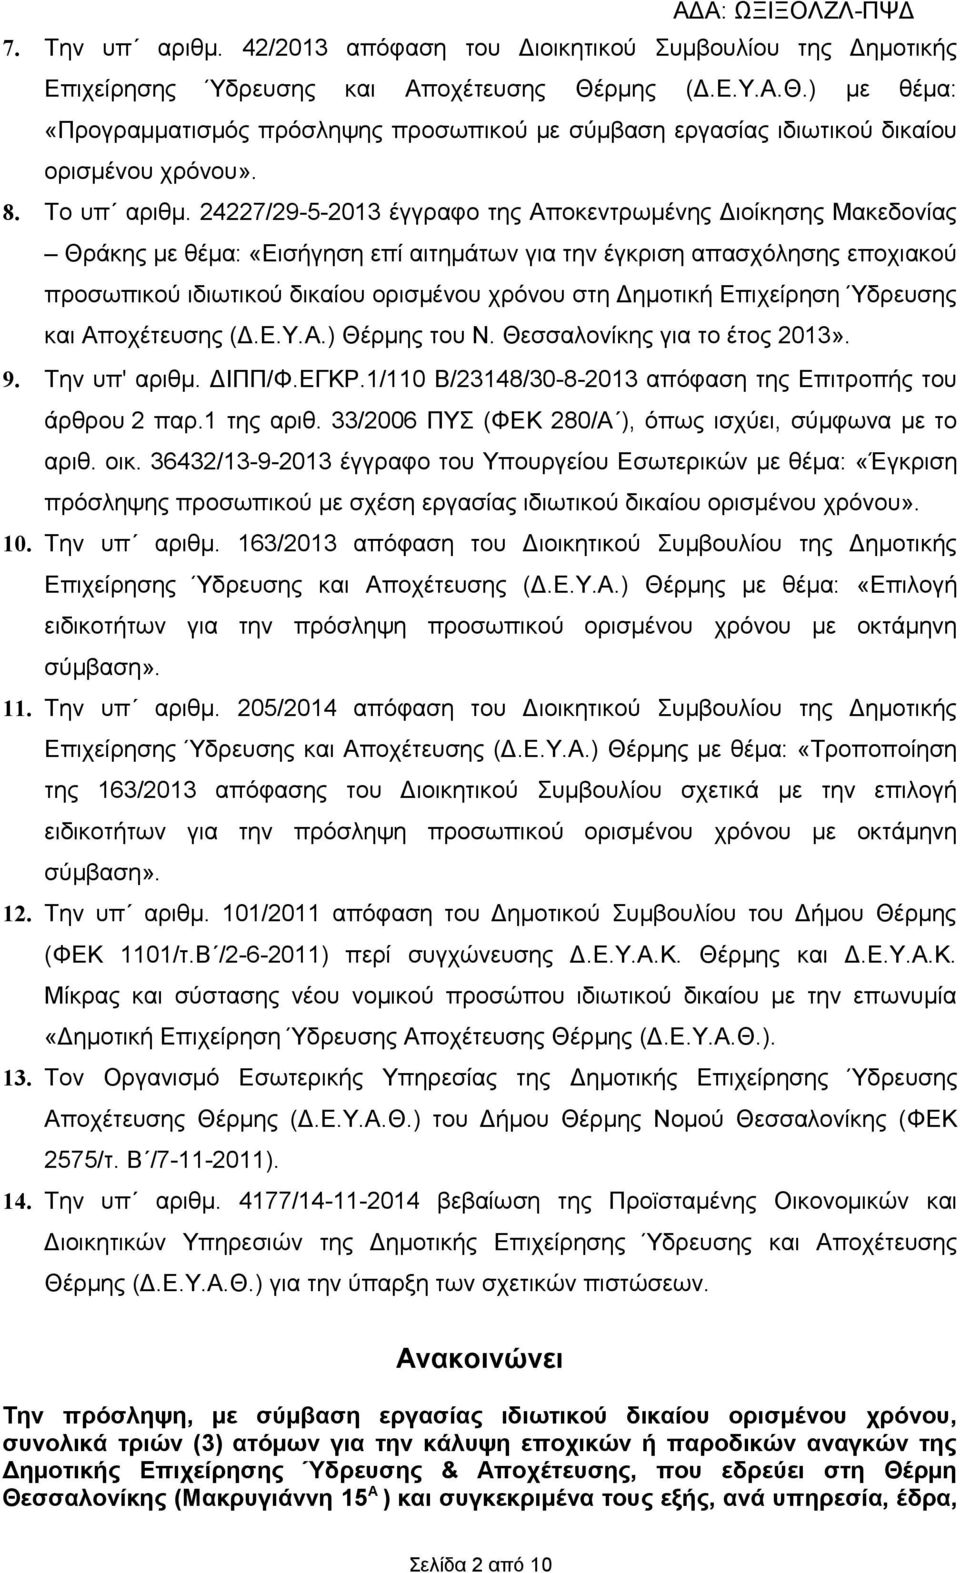 24227/29-5-2013 έγγραφο της Αποκεντρωμένης Διοίκησης Μακεδονίας Θράκης με θέμα: «Εισήγηση επί αιτημάτων για την έγκριση απασχόλησης εποχιακού προσωπικού ιδιωτικού δικαίου ορισμένου χρόνου στη